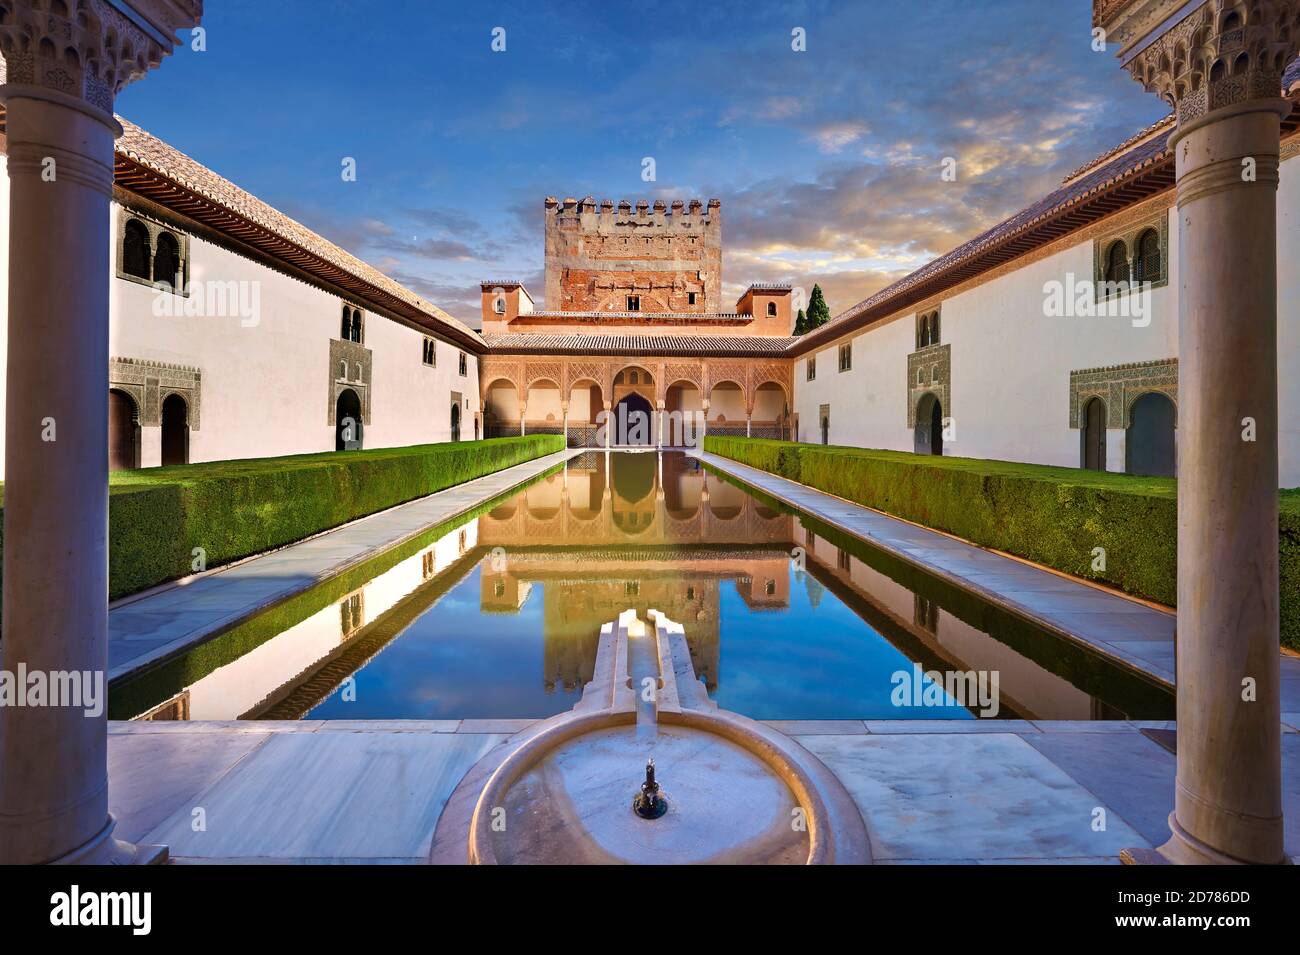 Arabeske maurische Architektur und Teich des Hofes der Myrtles der Palacios Naziare, Alhambra. Granada, Andalusien, Spanien. Stockfoto